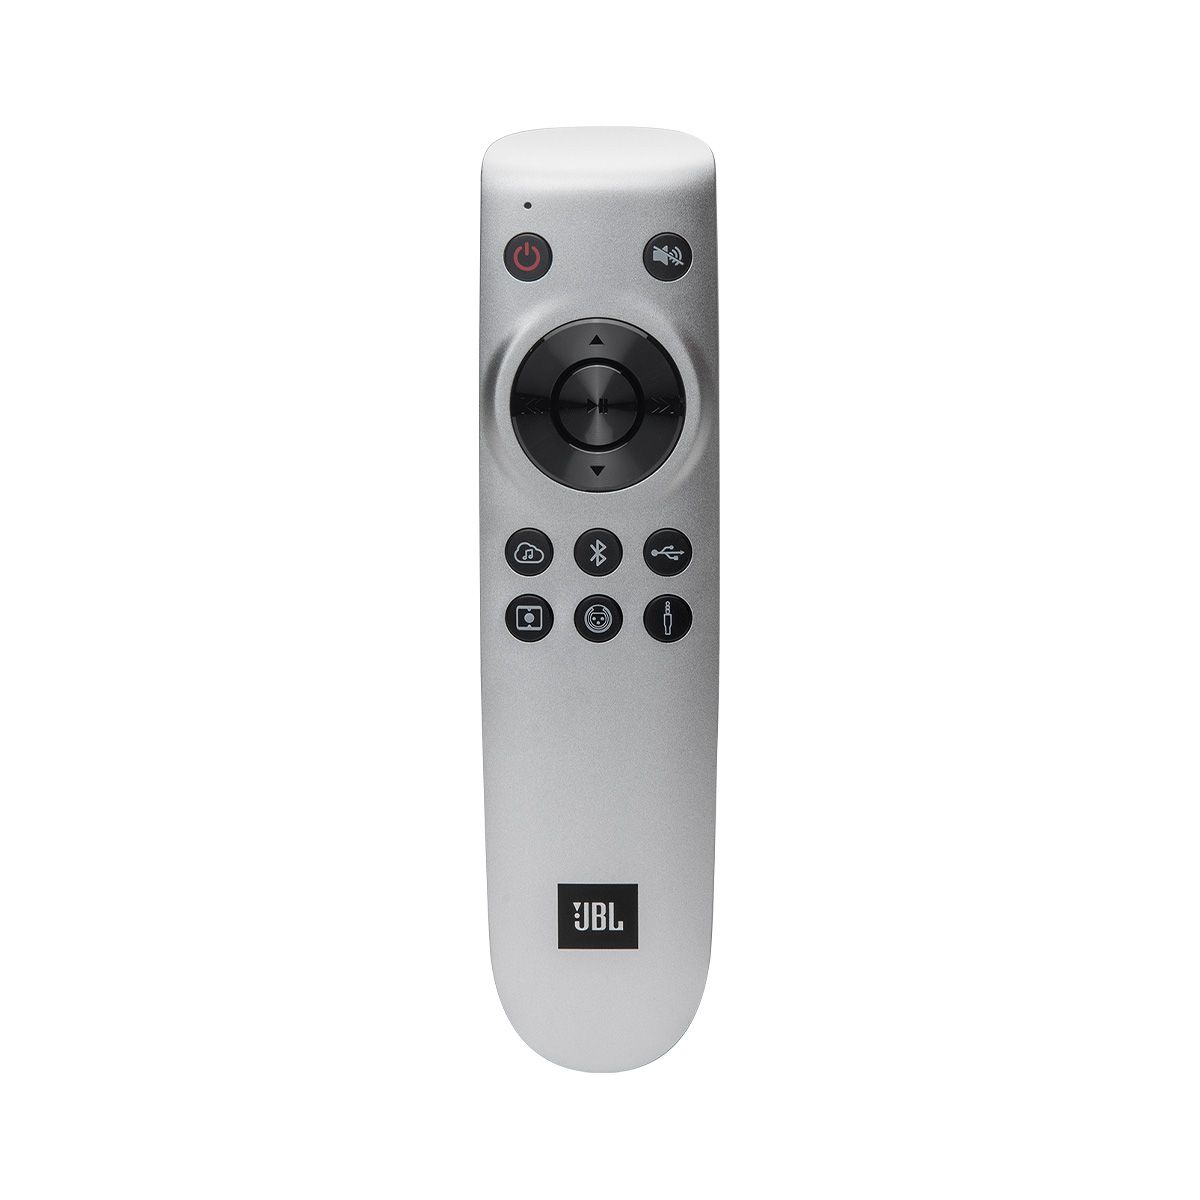 JBL L42ms Integrated Music System - Black Walnut remote control